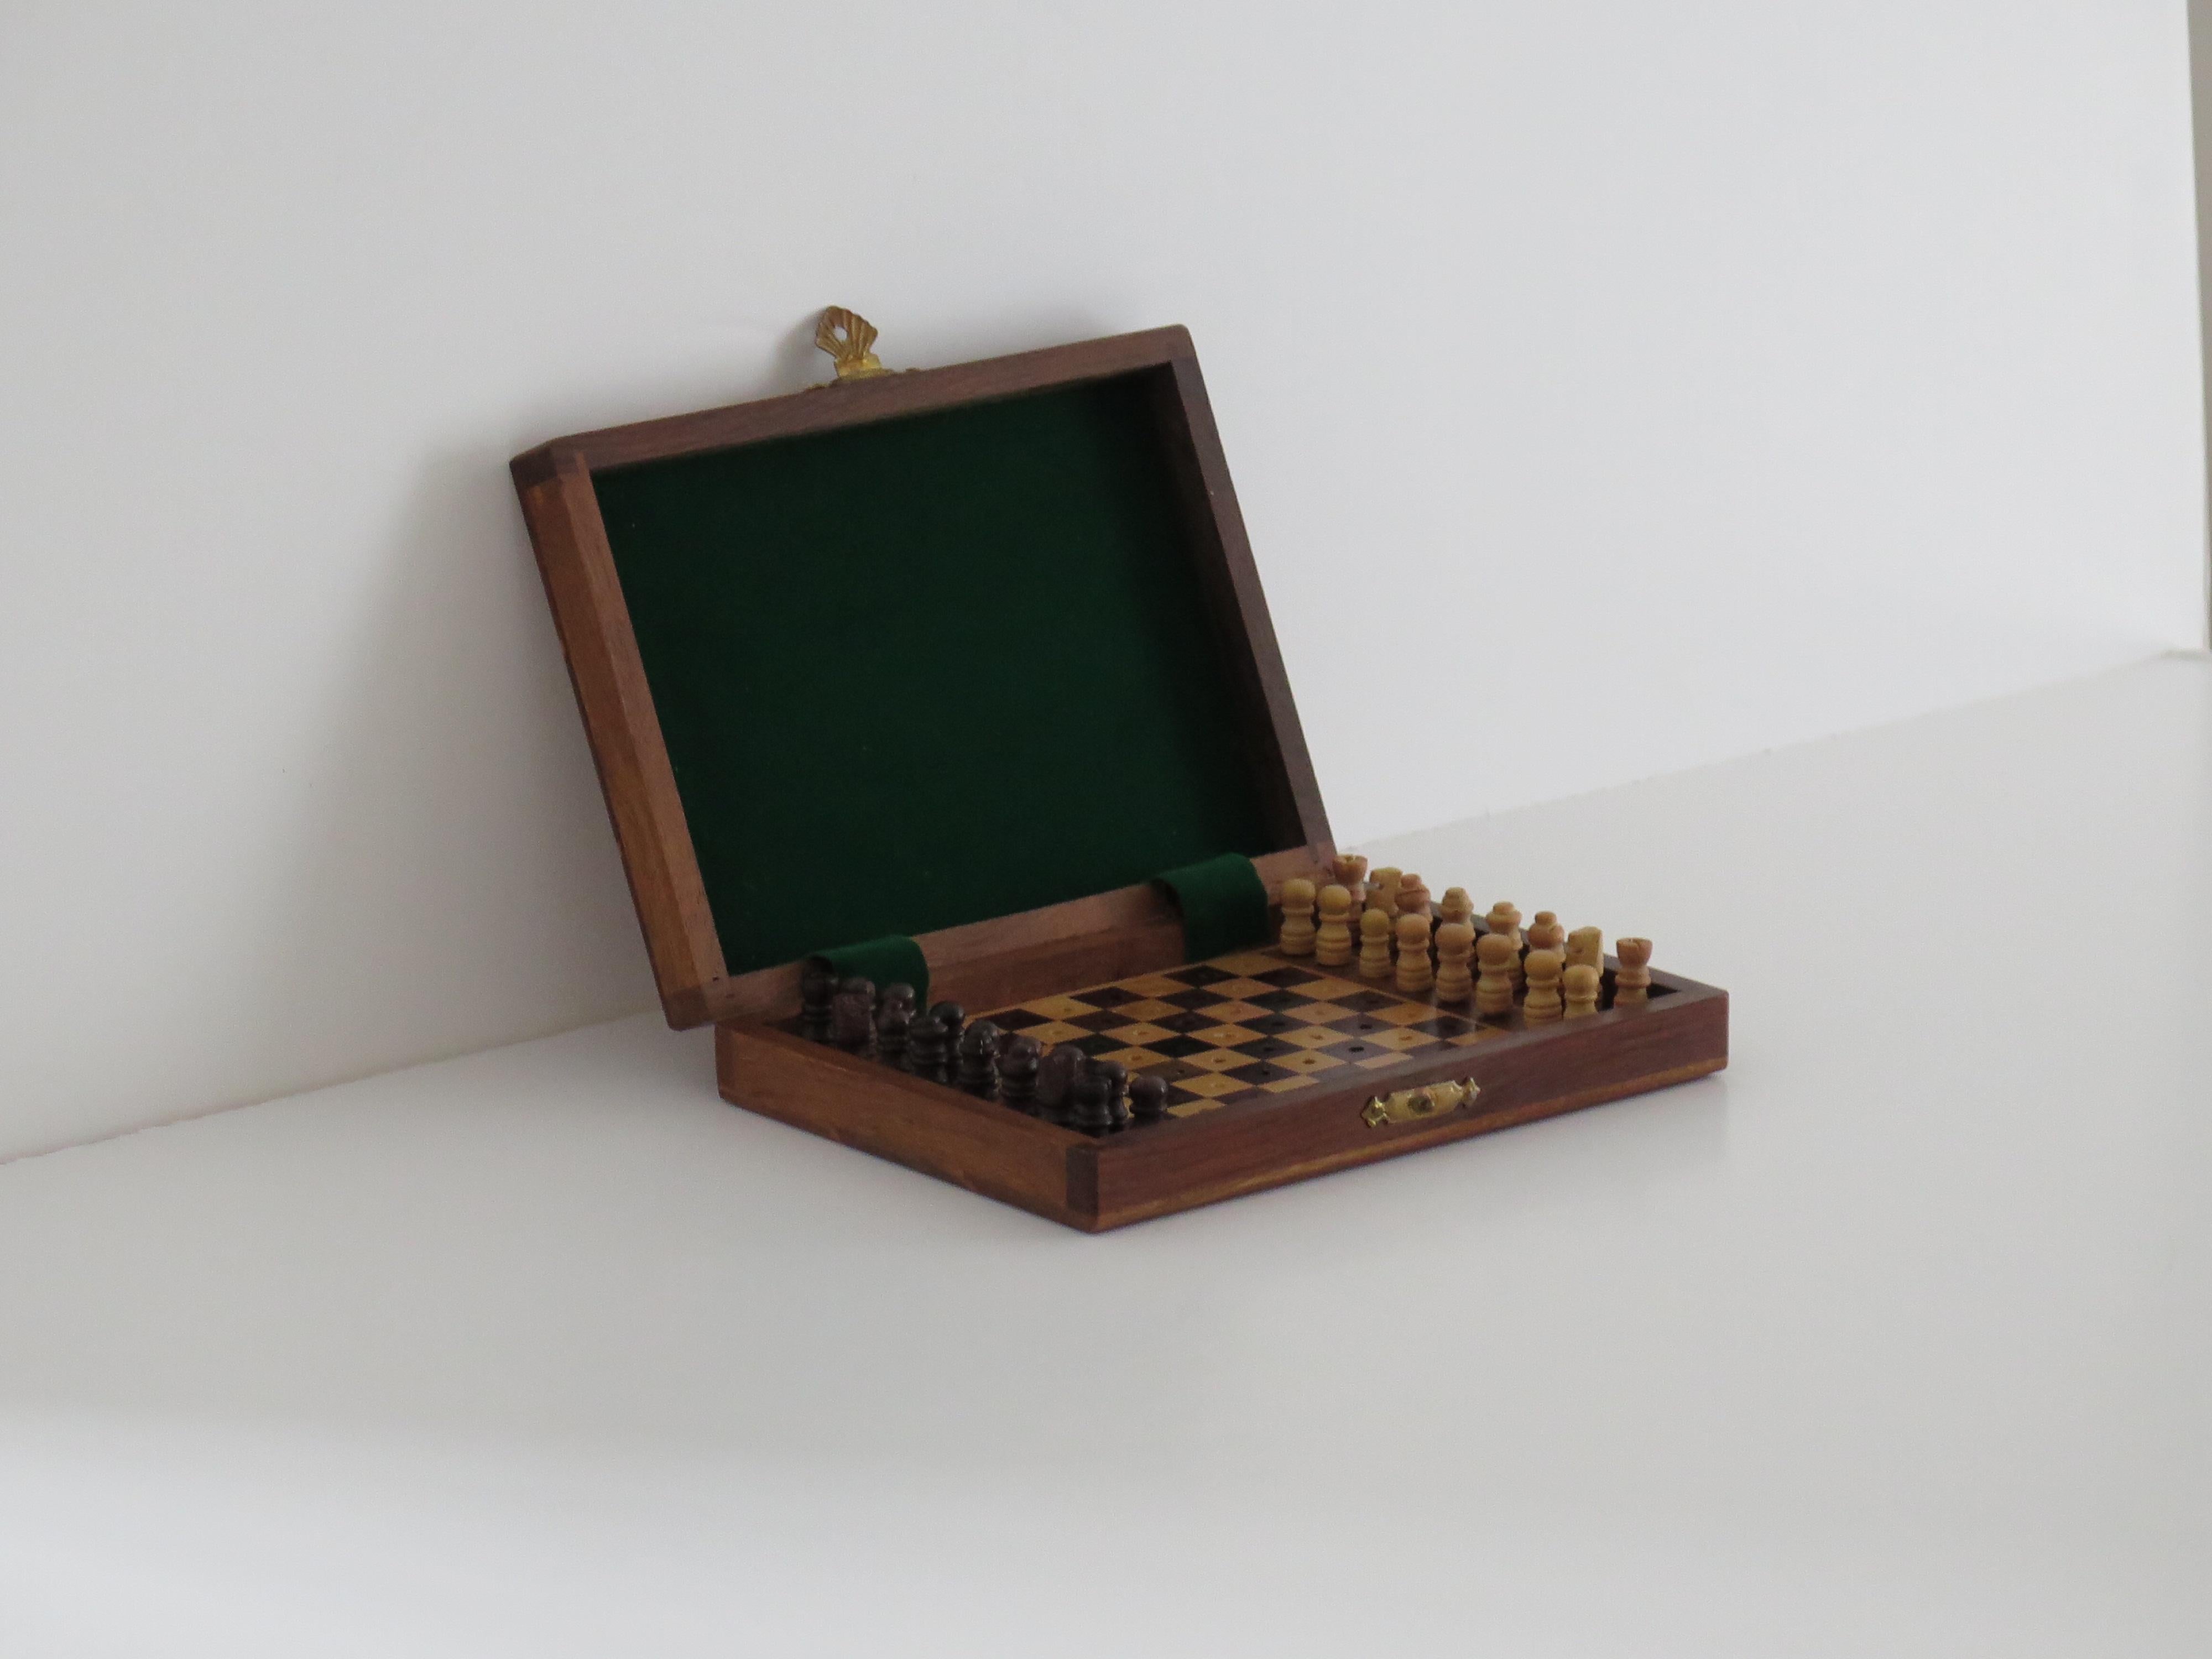 Il s'agit d'un jeu d'échecs miniature ou de voyage en bois de bonne qualité, fait à la main, composé de 32 pièces, dans sa propre boîte en bois dur incrusté, que nous datons du début du 20e siècle, vers 1920.

Cette pièce est entièrement réalisée à